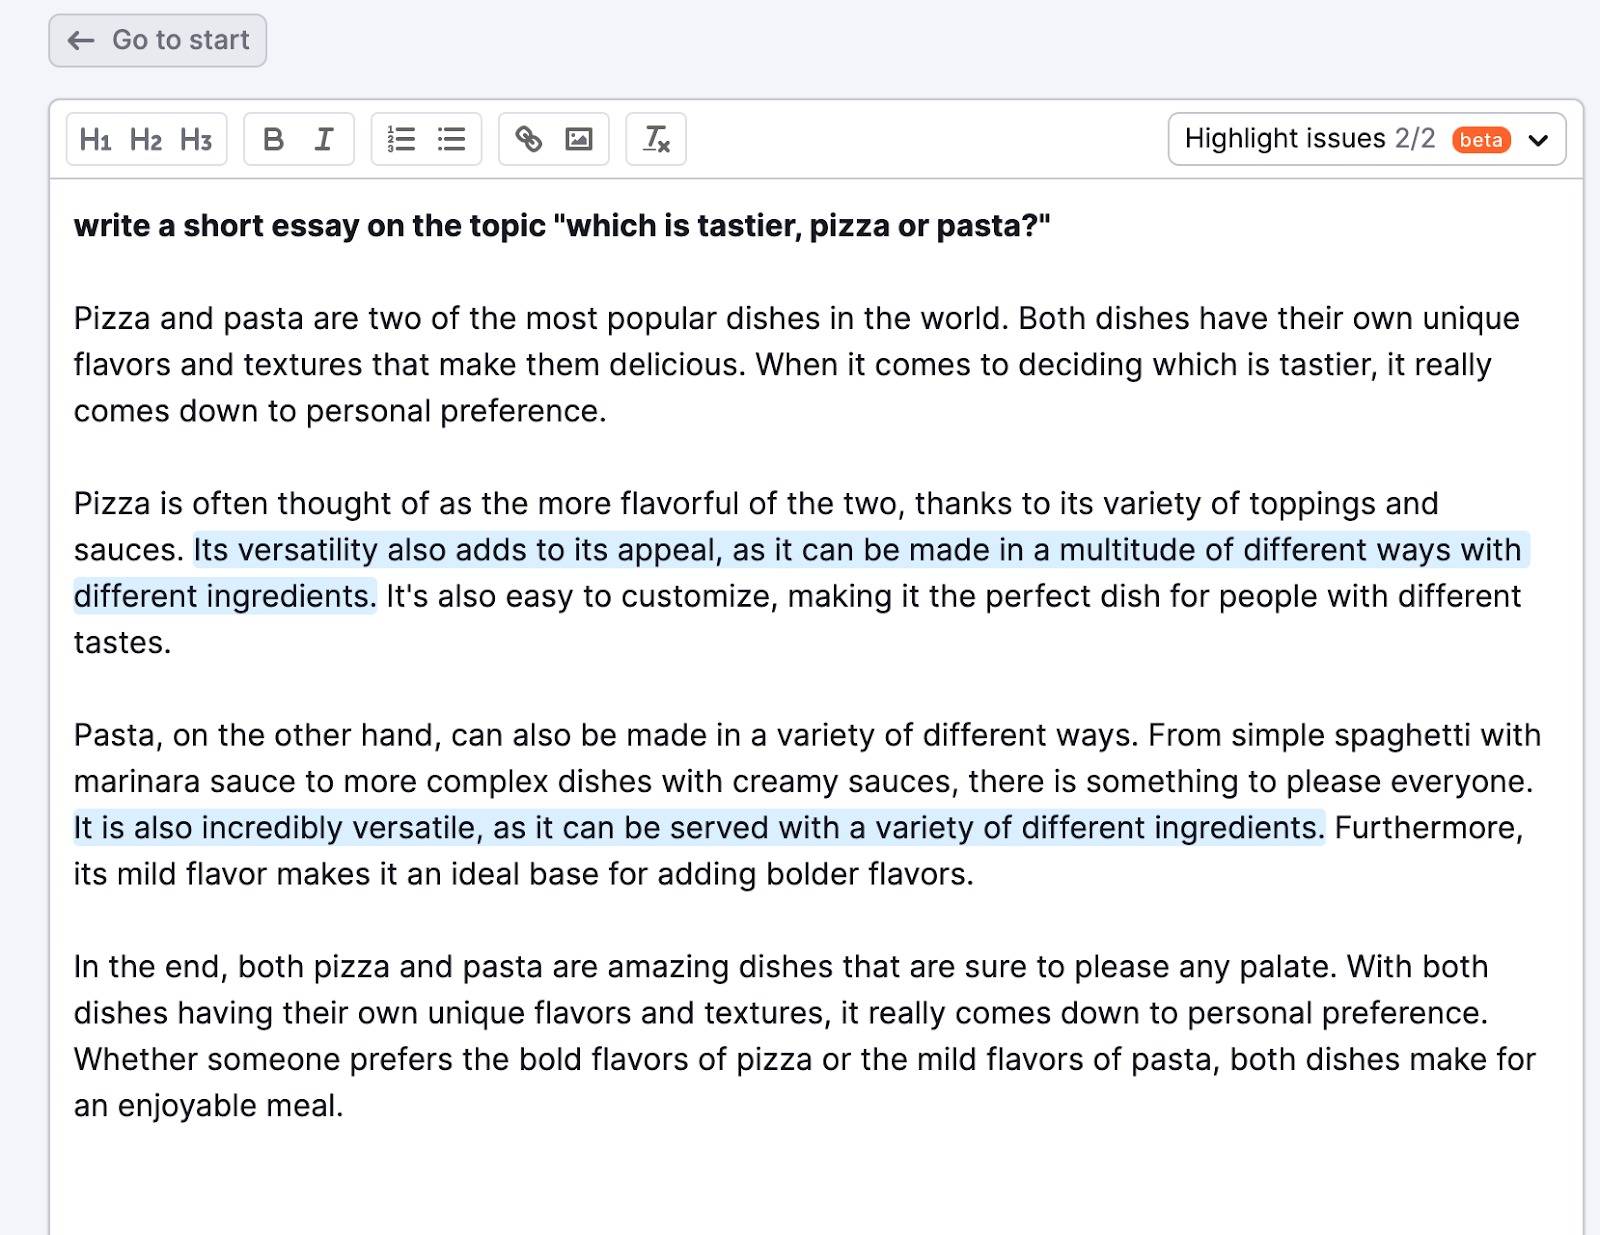 Beispiel der Funktion „Mit KI schreiben“. In diesem Beispiel bittet der Benutzer das Tool: „Schreibe einen kurzen Essay zu Thema: Was ist leckerer, Pizza oder Pasta?“. Das Tool antwortet dann mit vier Absätzen zum Thema. 